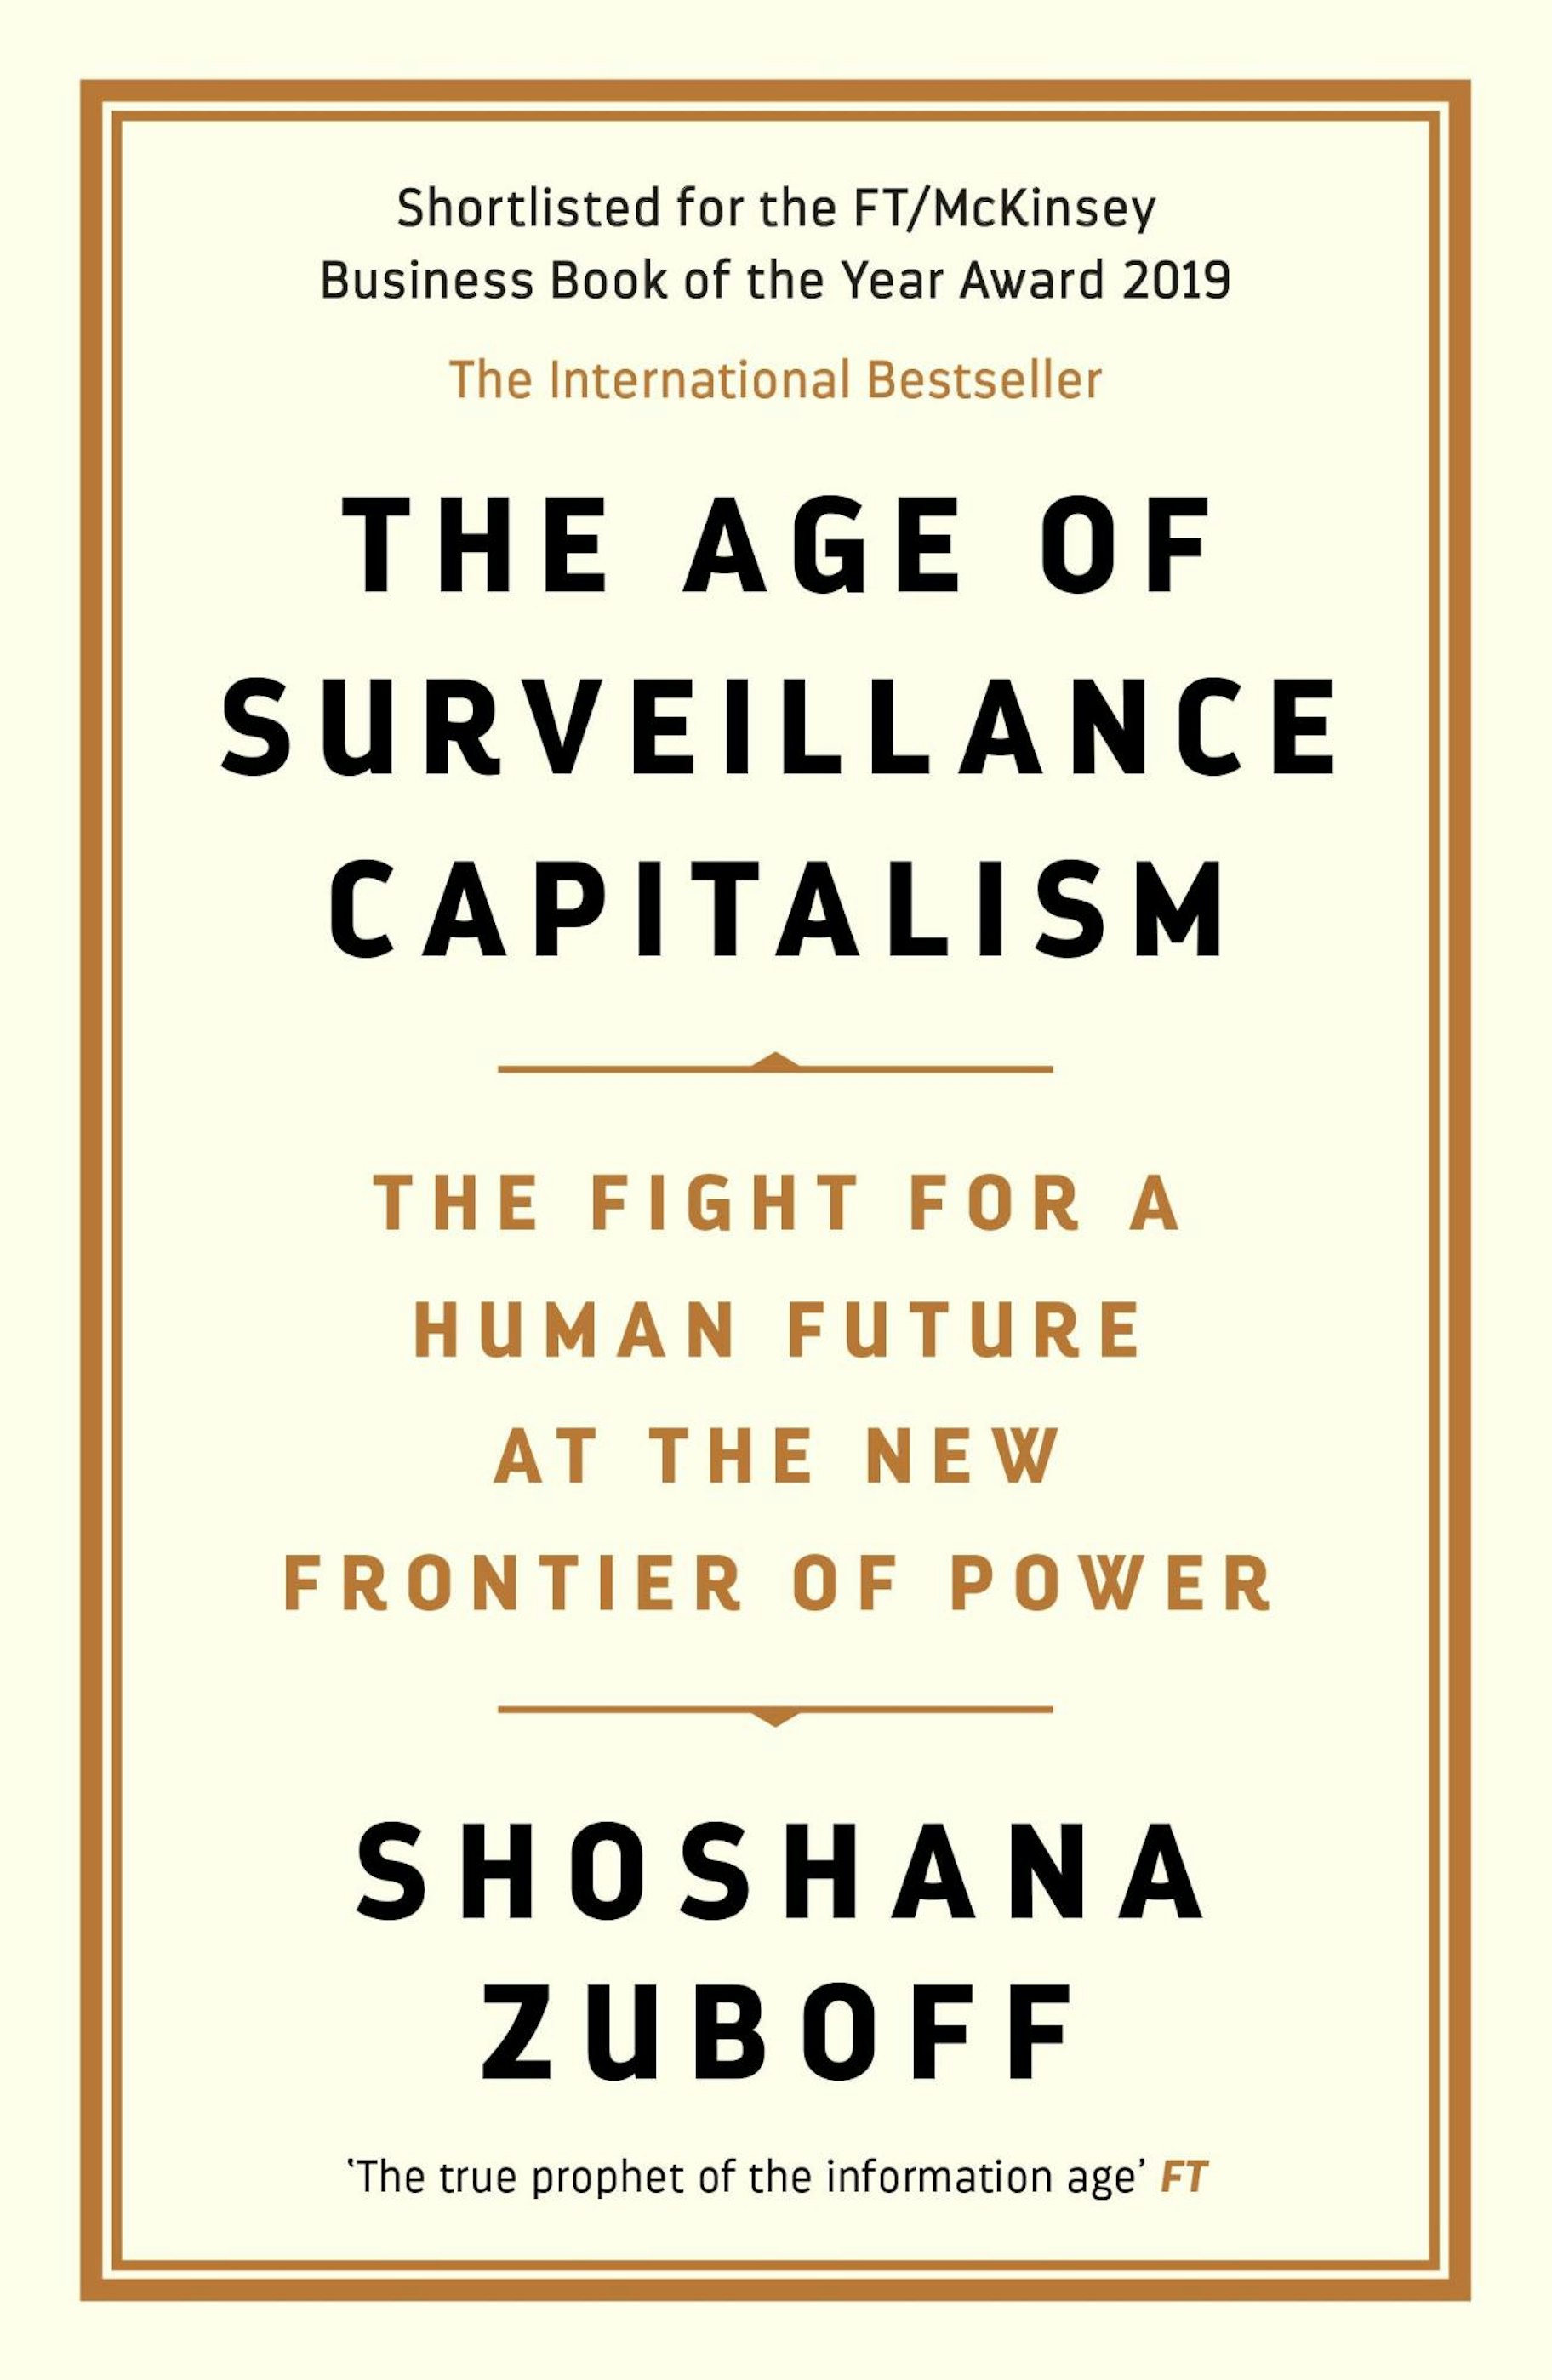 Das Zeitalter des Überwachungskapitalismus - Shoshana Zuboff